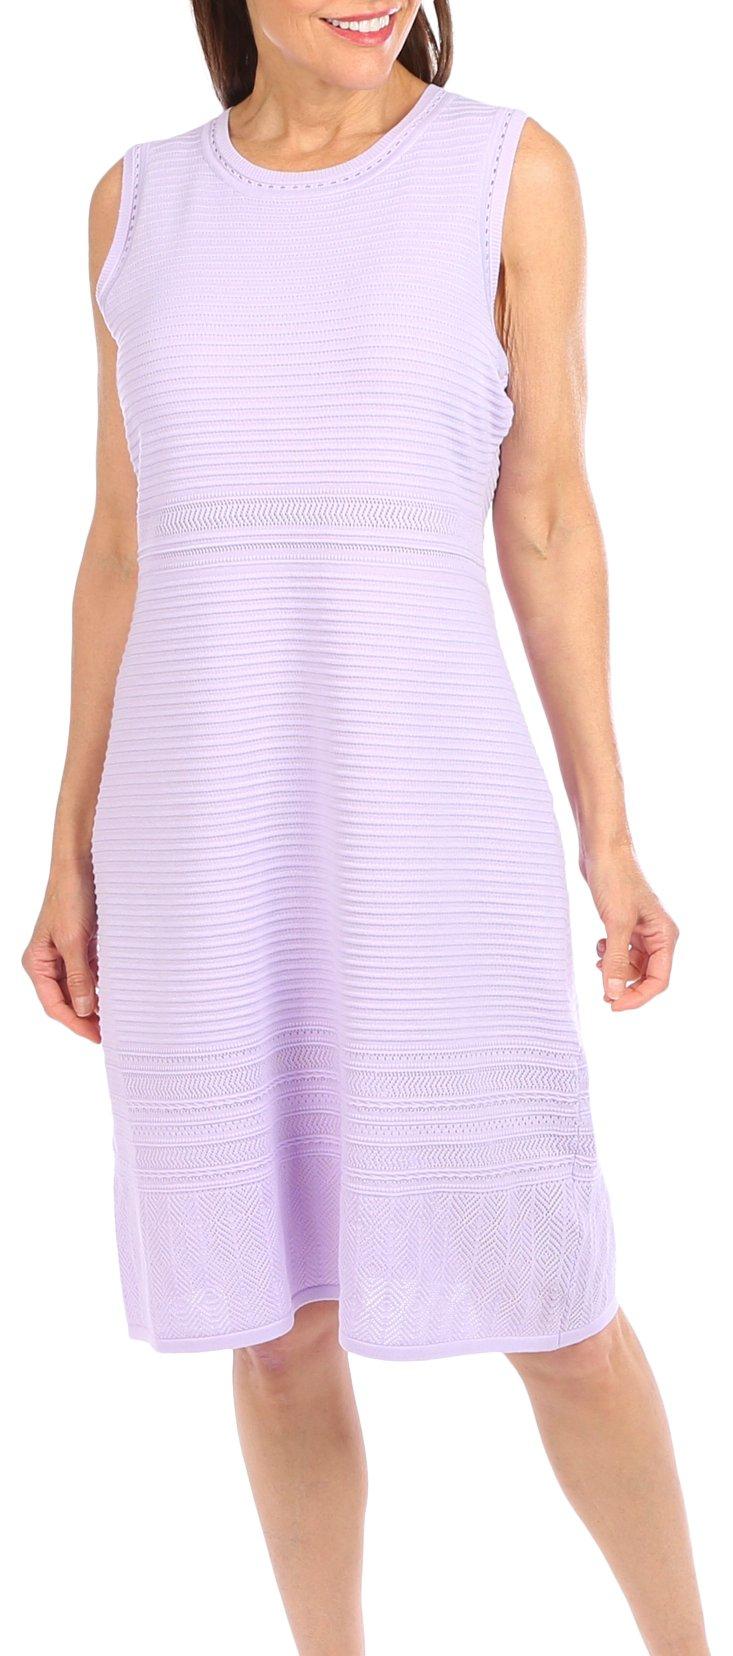 Nanette Lepore Womens Solid Sleeveless Dress